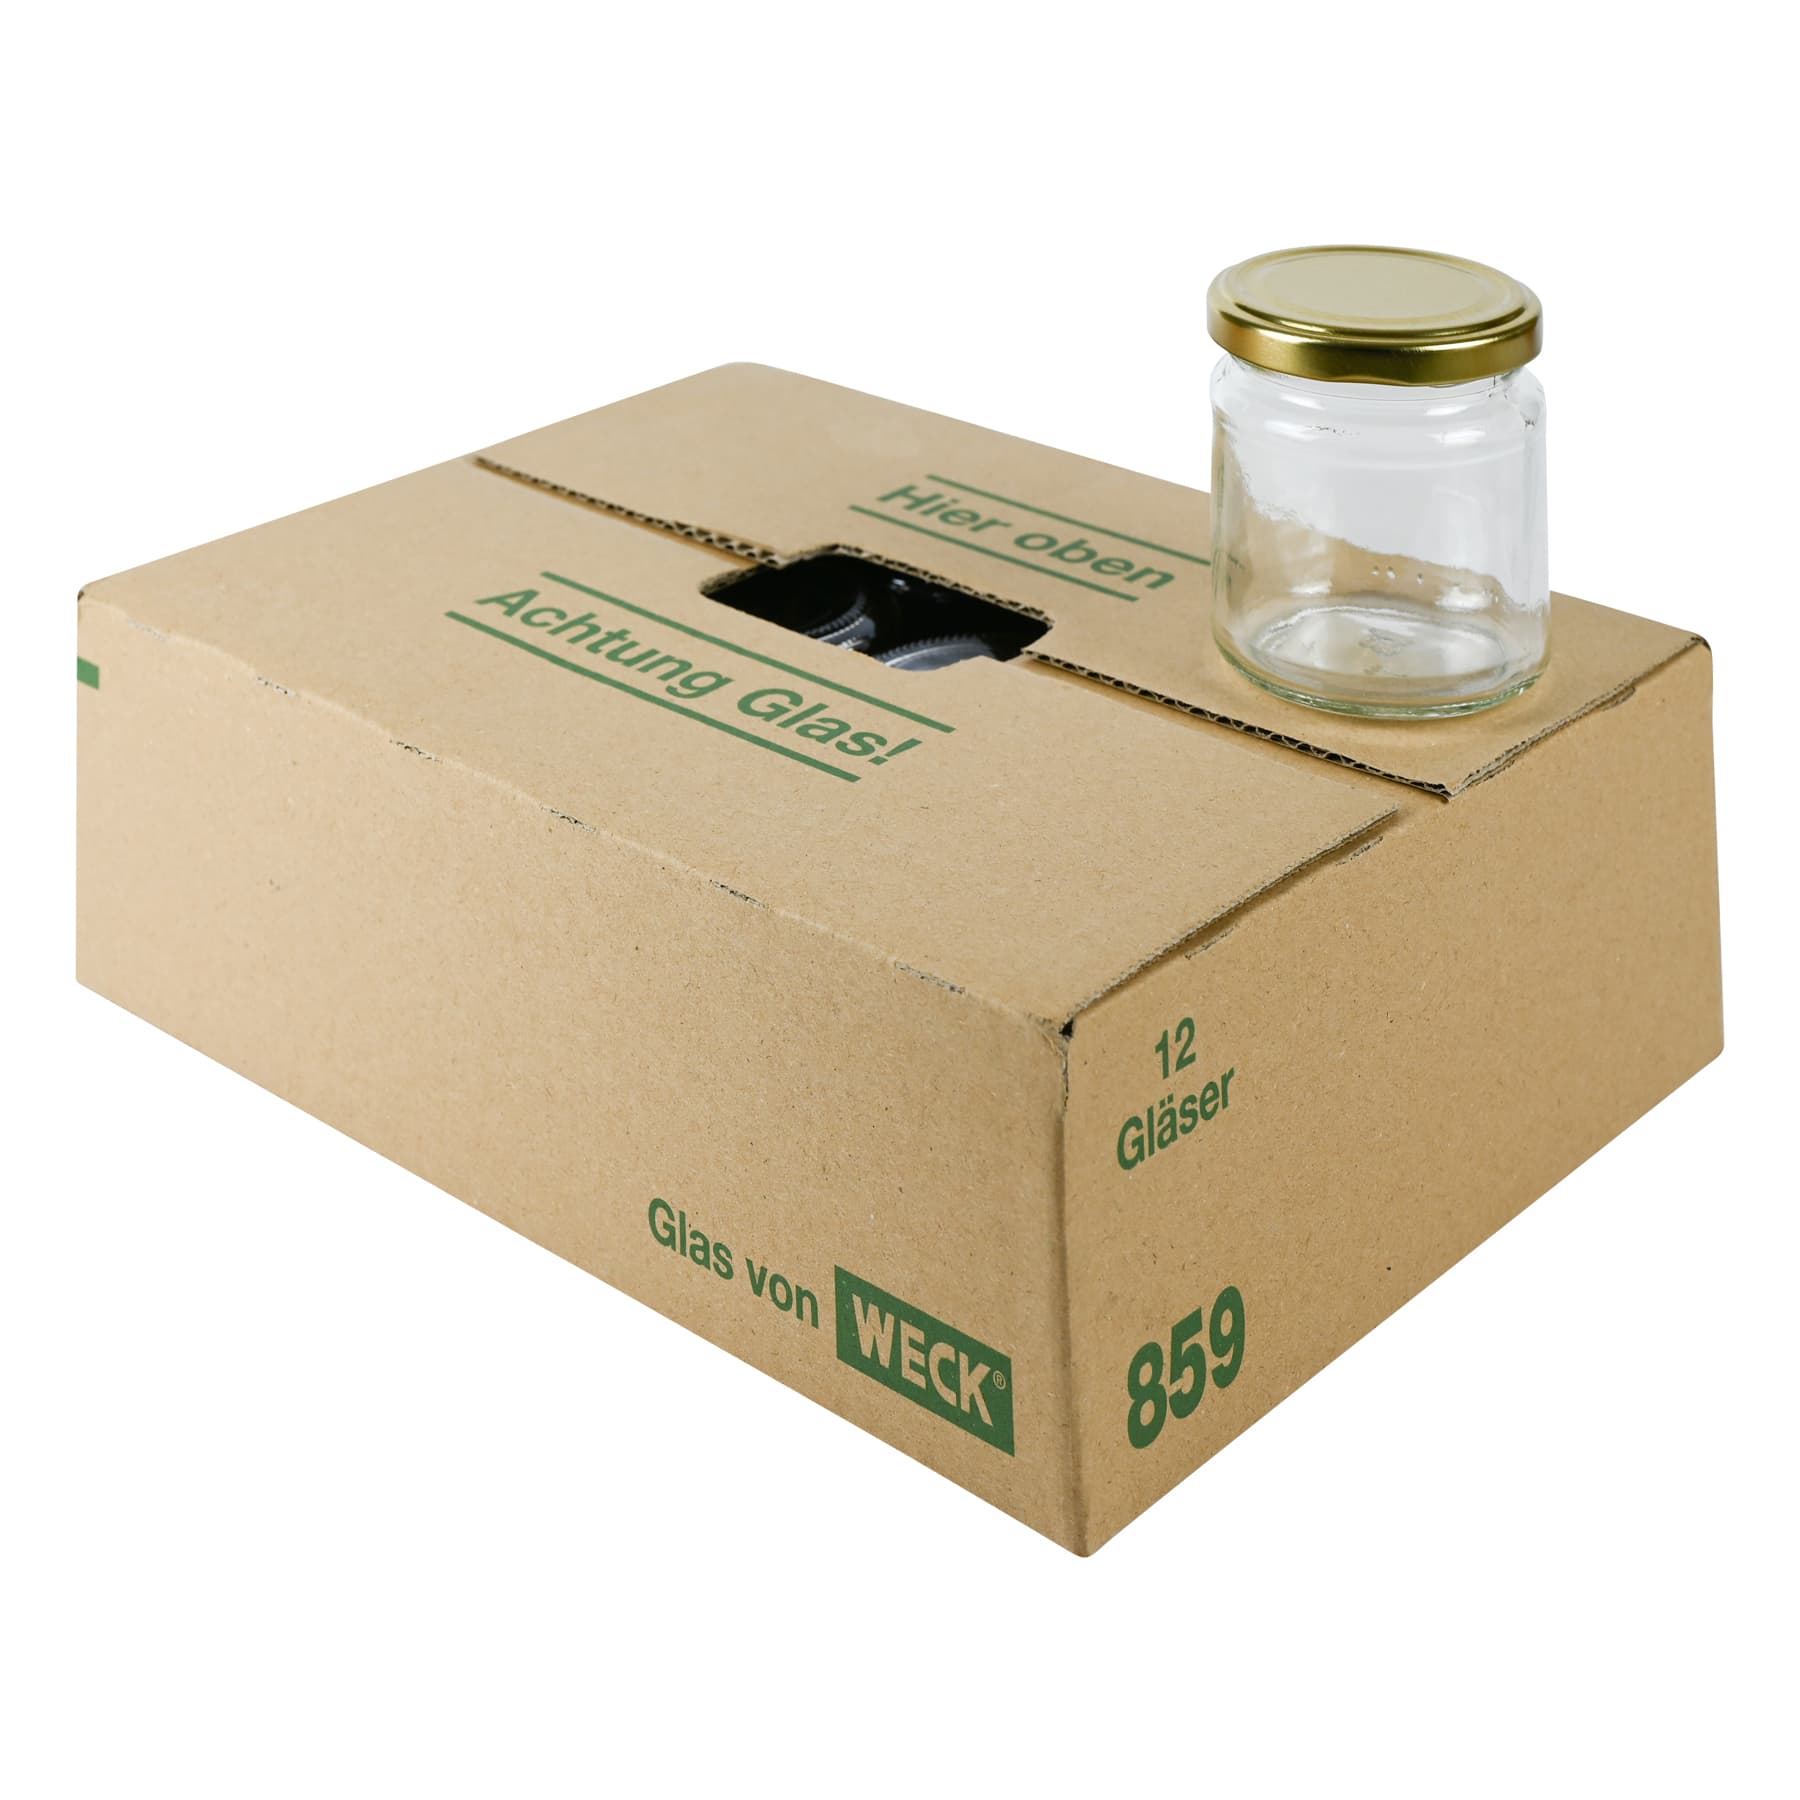 Rundglas 250 g (212 ml), mit T0 Deckel gold 66mm in Karton Weckglas 859 nur Selbstabholung